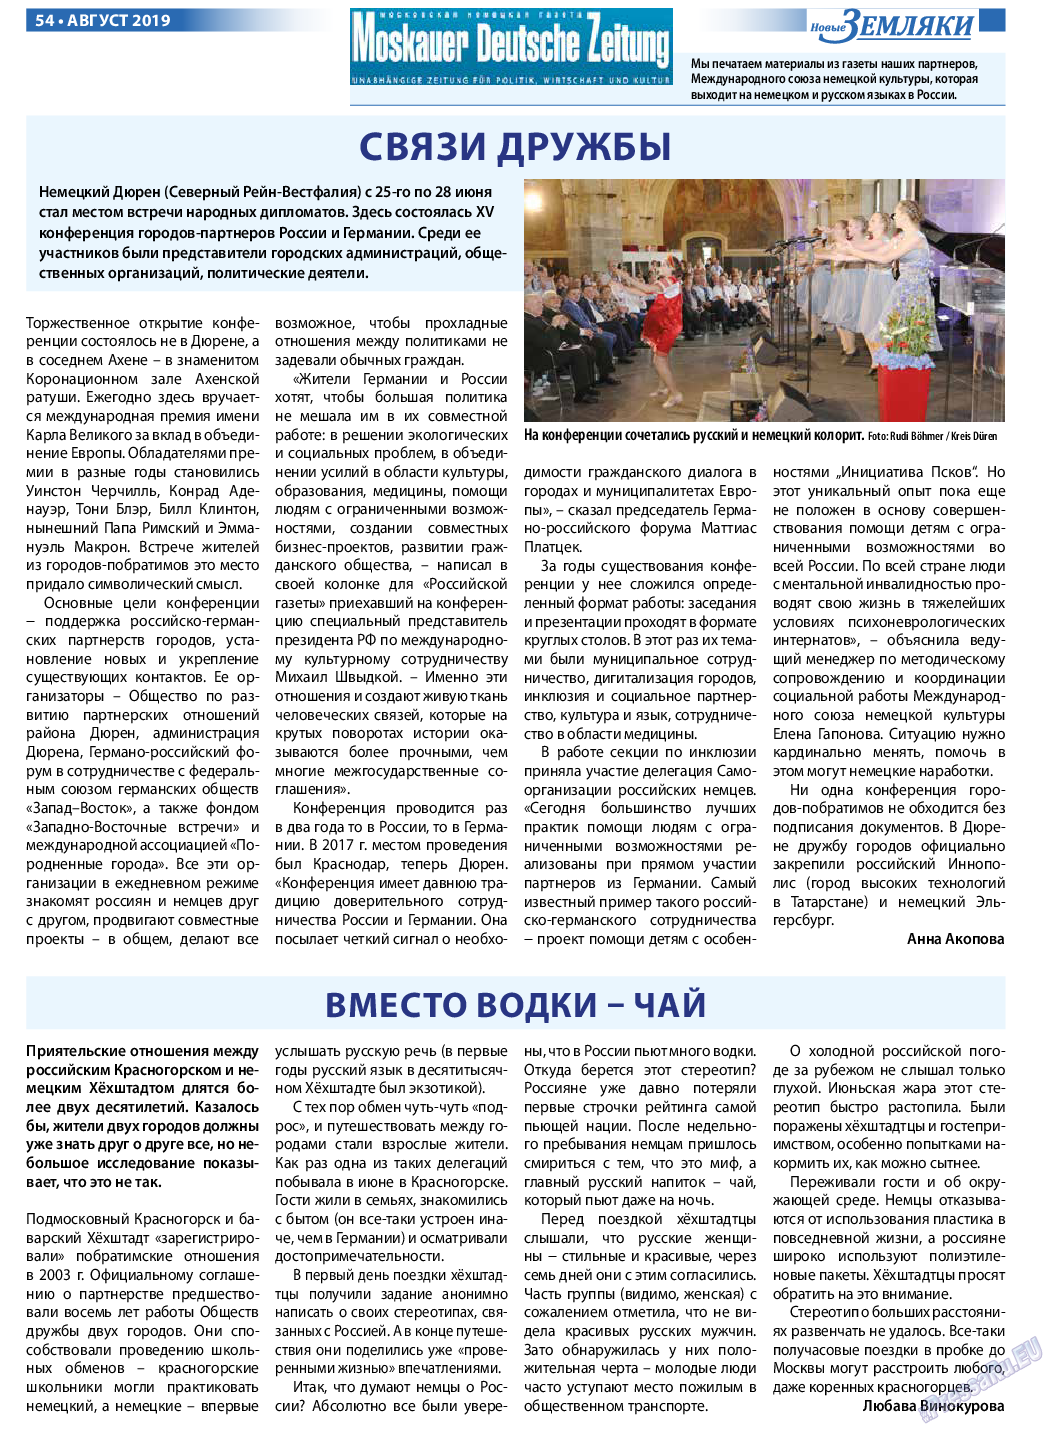 Новые Земляки, газета. 2019 №8 стр.54